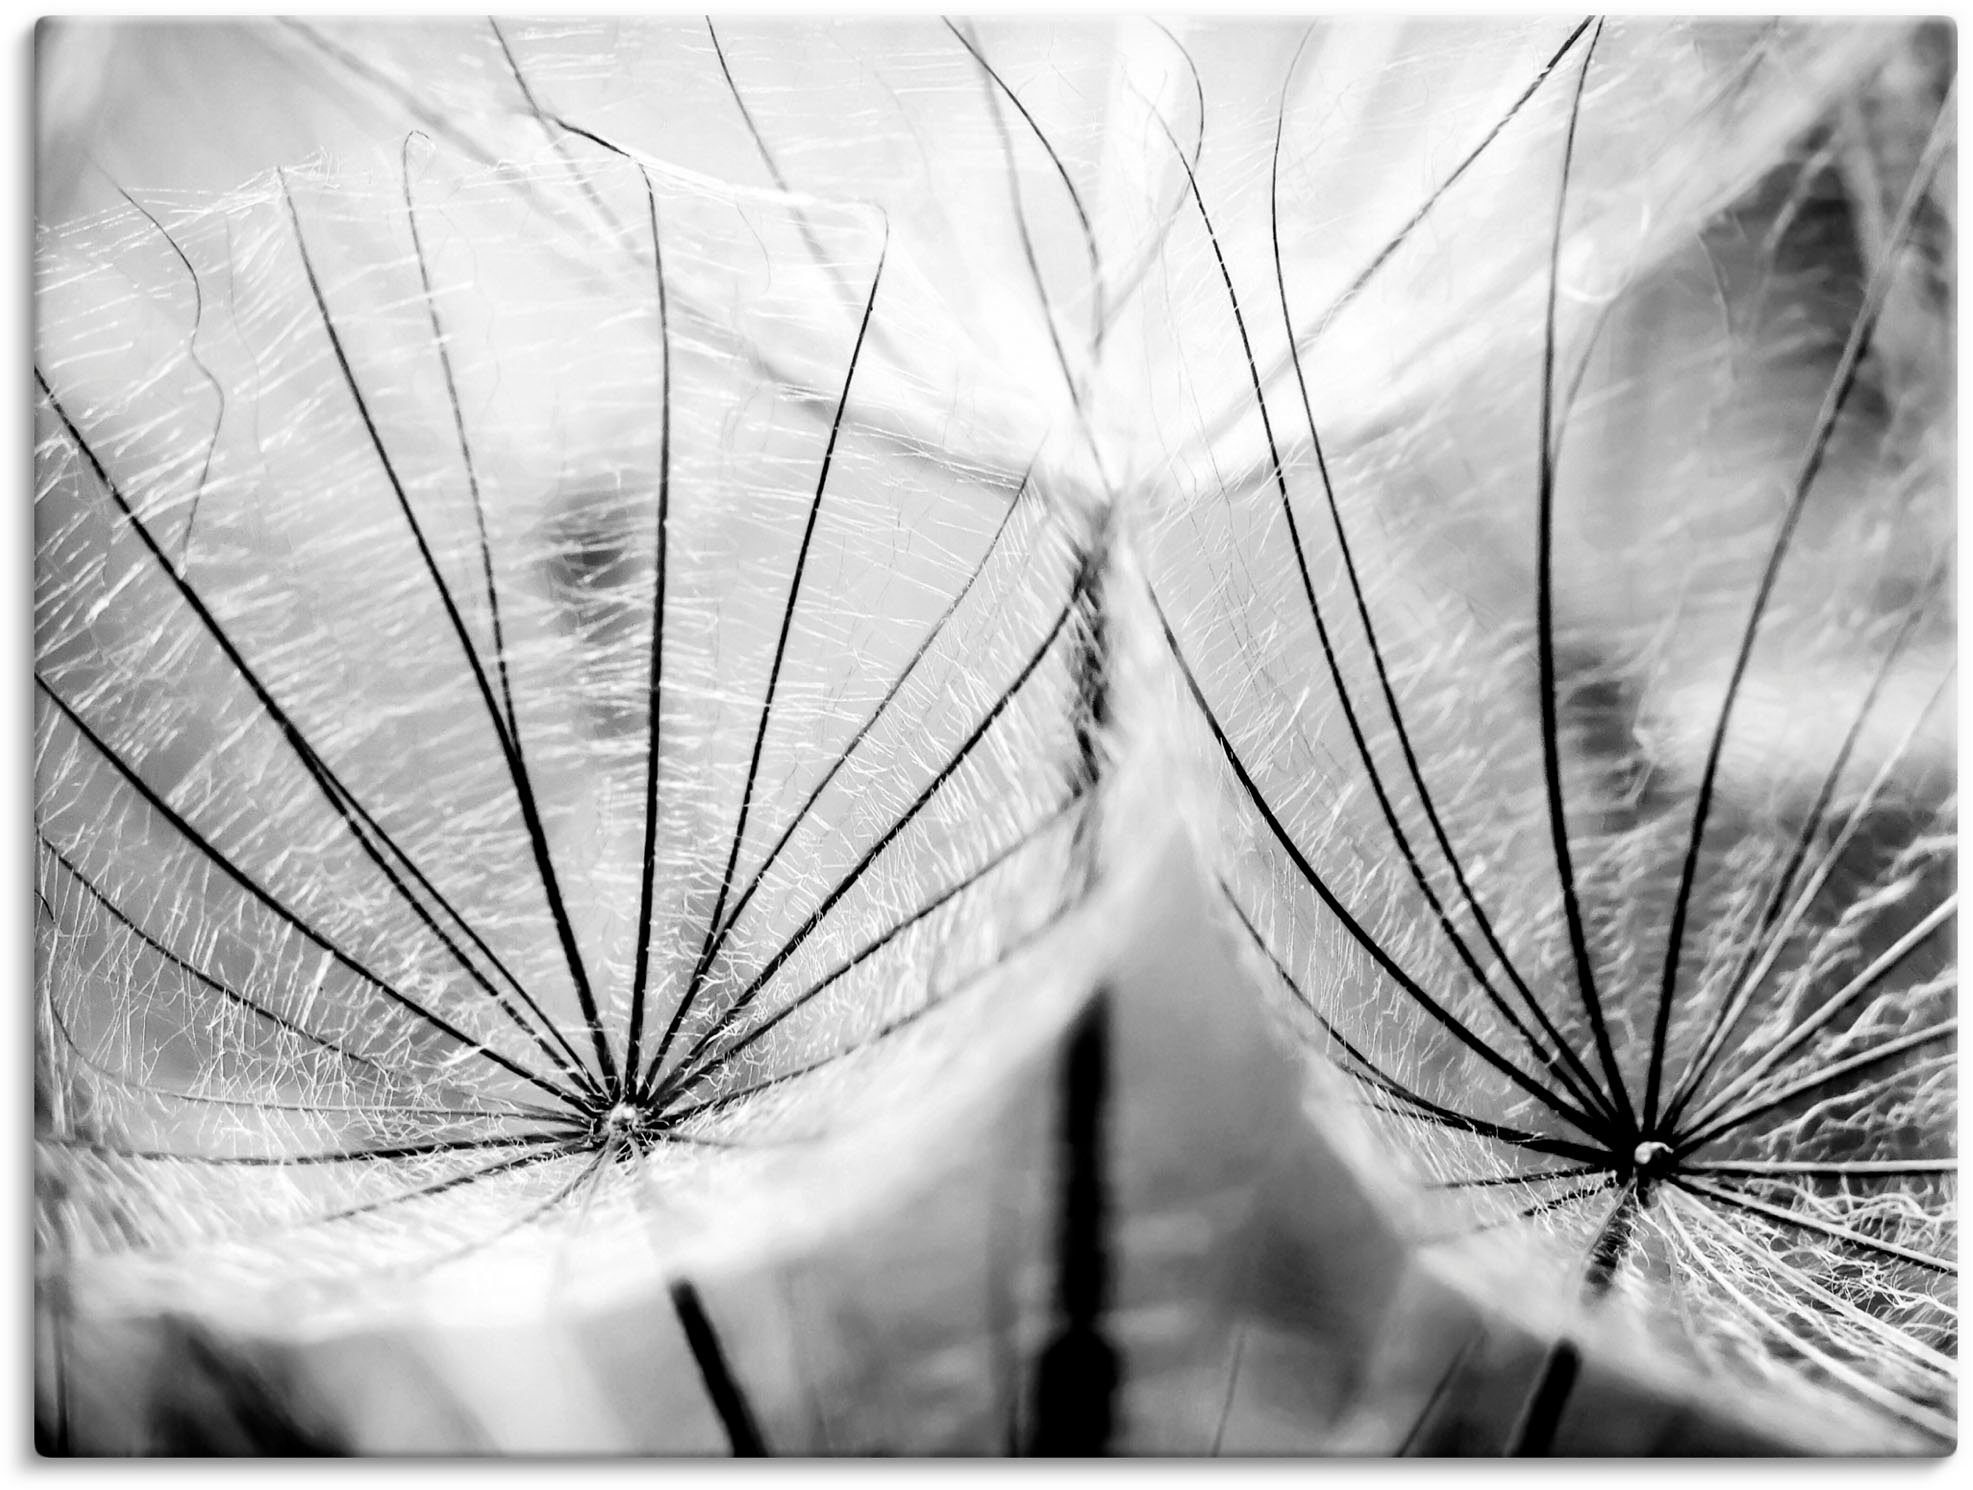 Artland Artprint Pluizenbol in zwart-wit in vele afmetingen & productsoorten - artprint van aluminium / artprint voor buiten, artprint op linnen, poster, muursticker / wandfolie oo